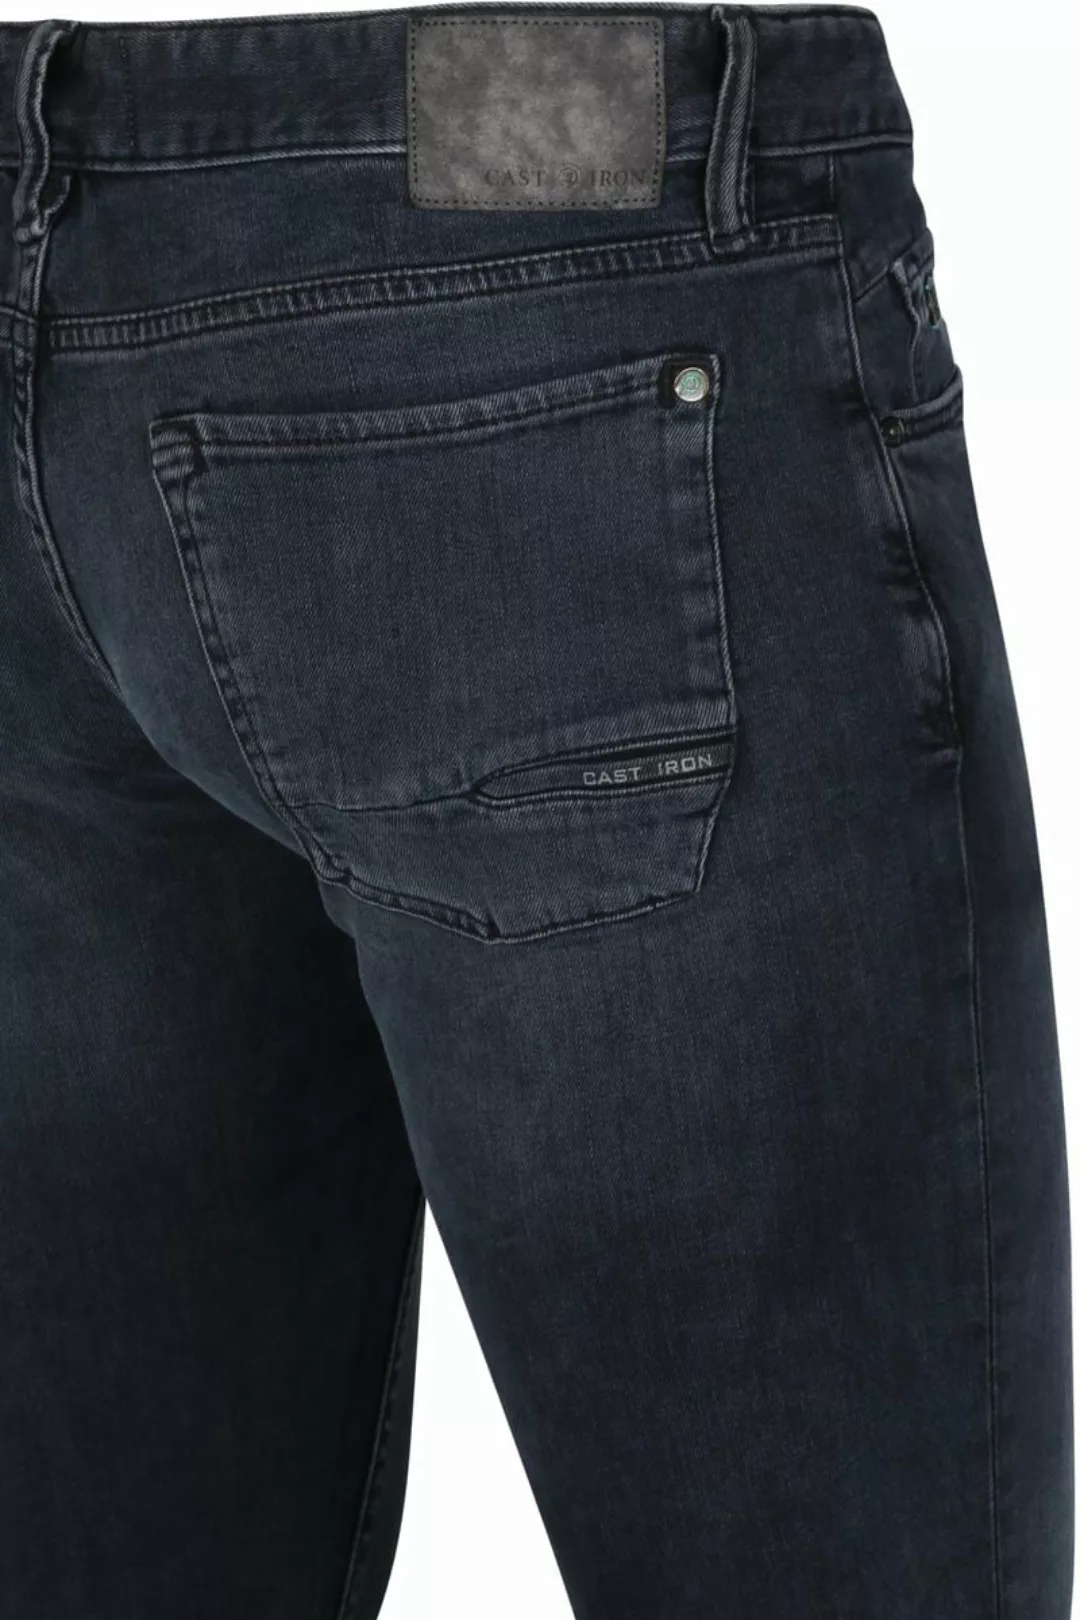 Cast Iron Riser Slim Jeans Vintage Washed Denim Schwarz - Größe W 30 - L 34 günstig online kaufen